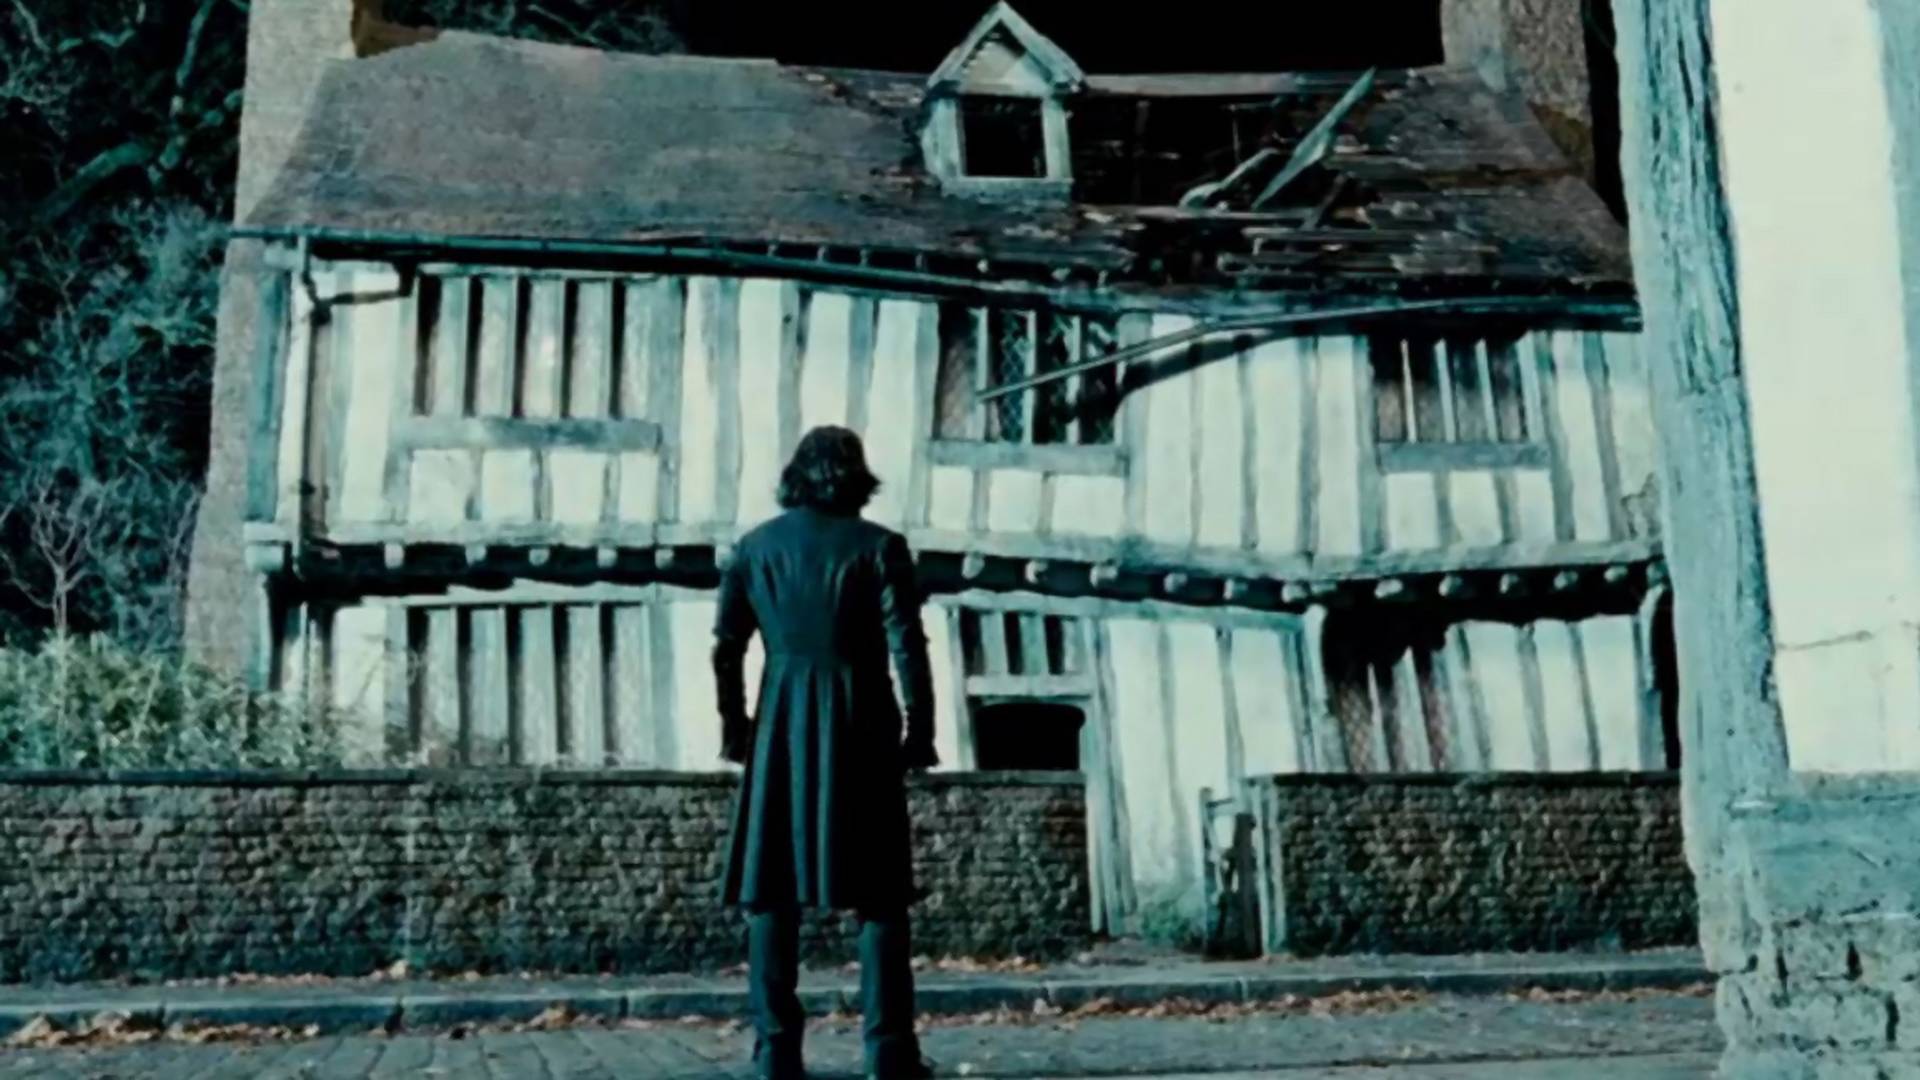 Eladó Harry Potter szülőháza - Gondolnád, hogy ennyibe kerül?